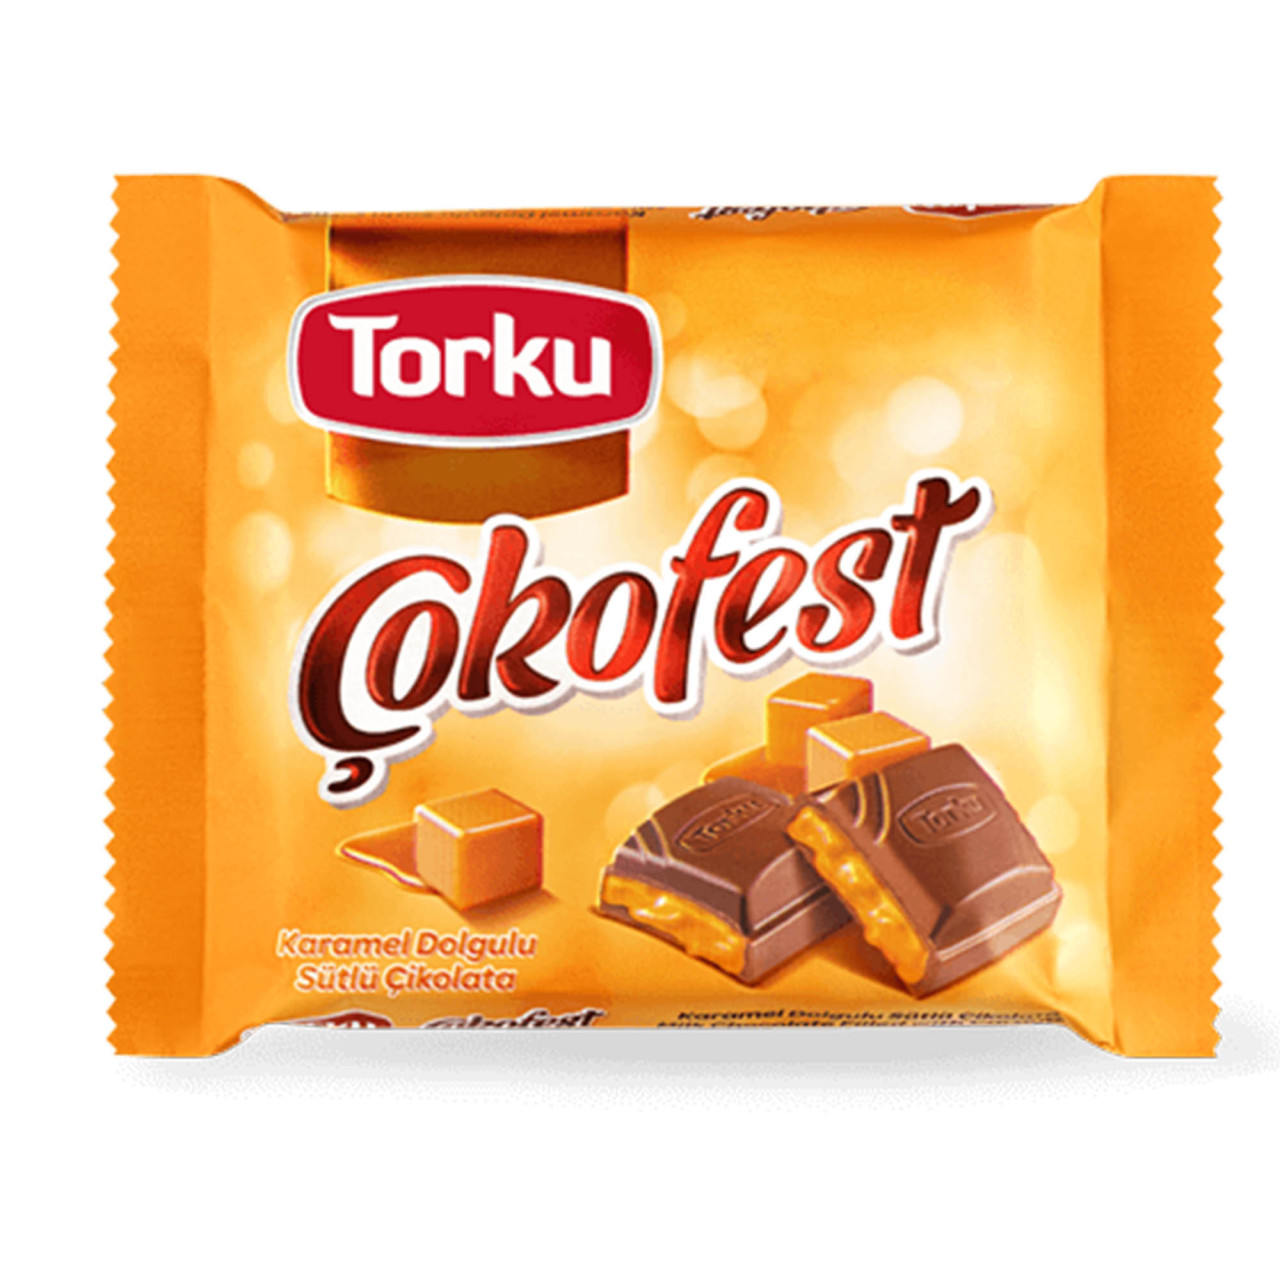 Torku Çokofest Karamelli Sütlü Çikolata 60 Gr